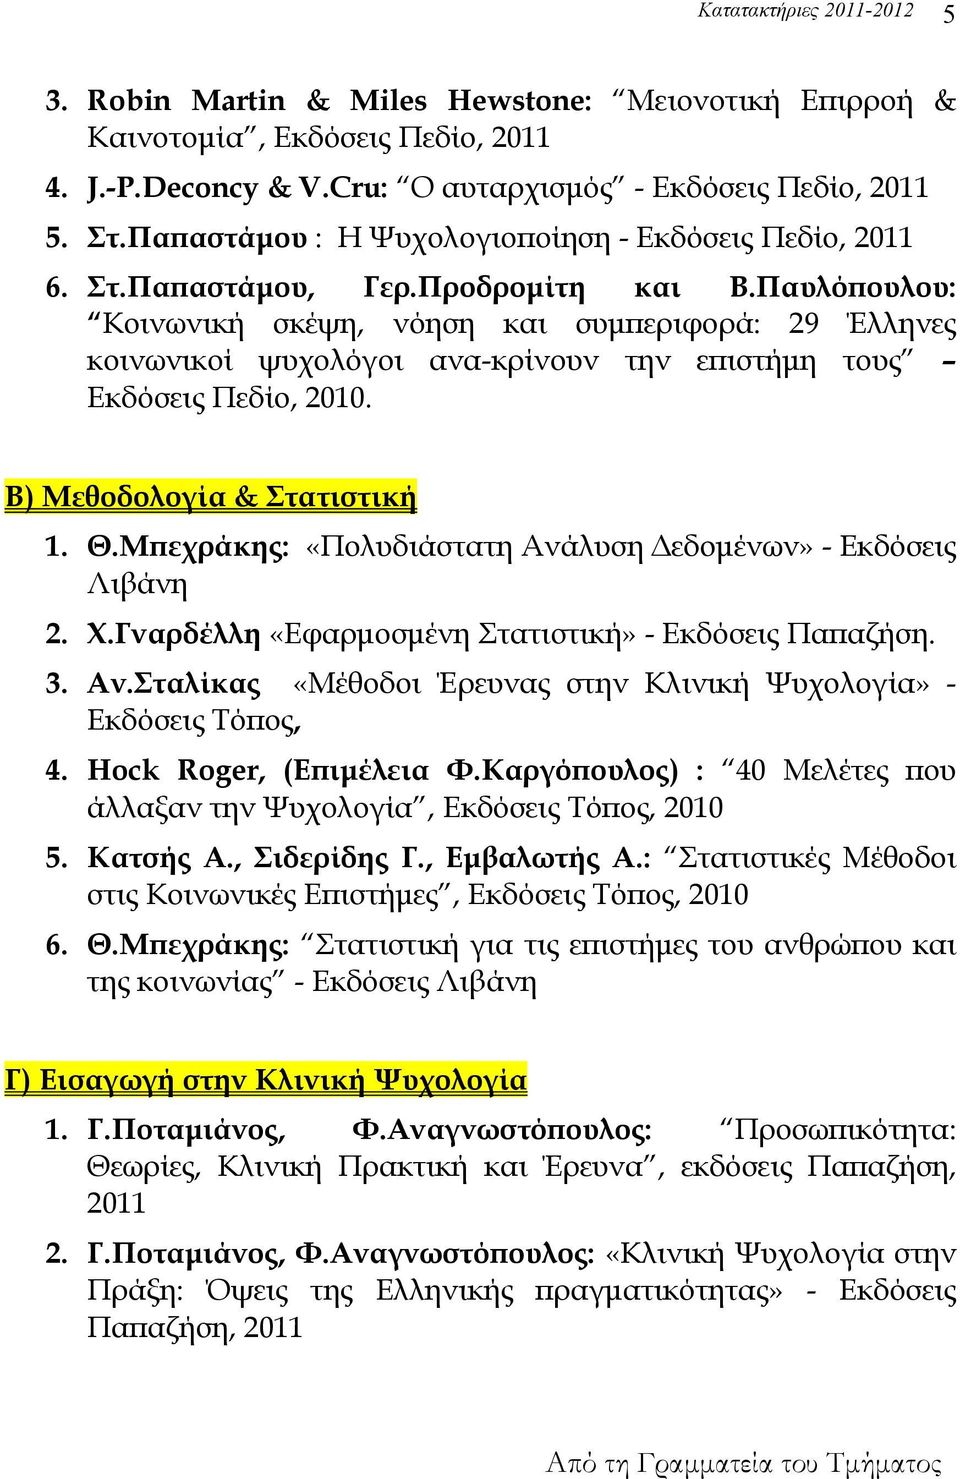 Παυλόπουλου: Κοινωνική σκέψη, νόηση και συμπεριφορά: 29 Έλληνες κοινωνικοί ψυχολόγοι ανα-κρίνουν την επιστήμη τους Εκδόσεις Πεδίο, 2010. Β) Μεθοδολογία & Στατιστική 1. Θ.